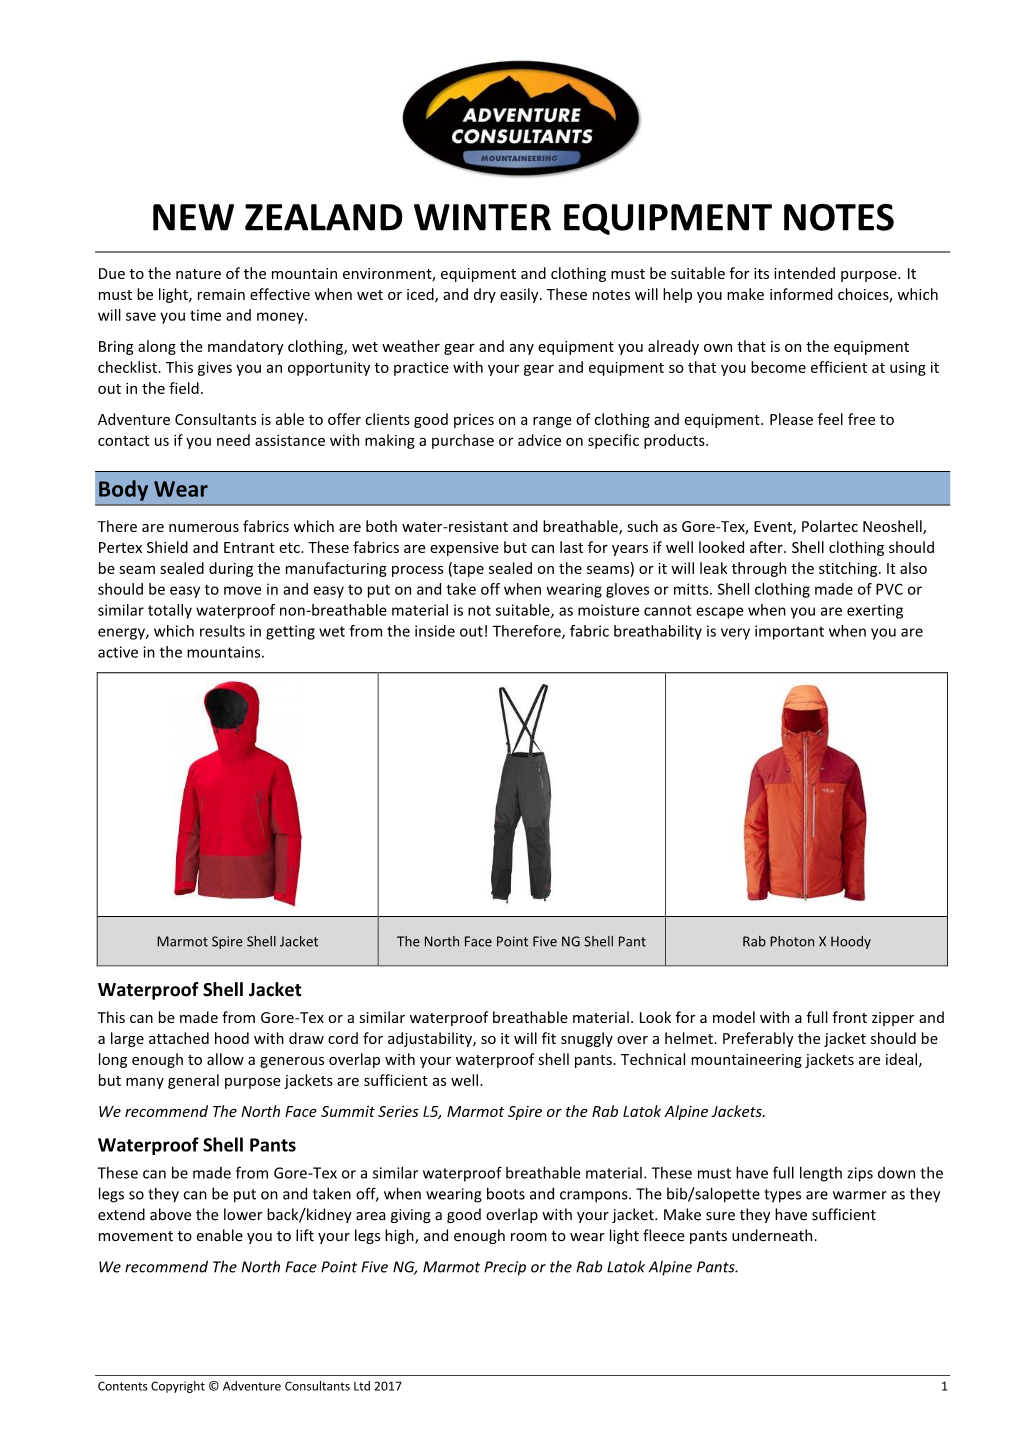 NZ Winter Equipment Notes 2017-18